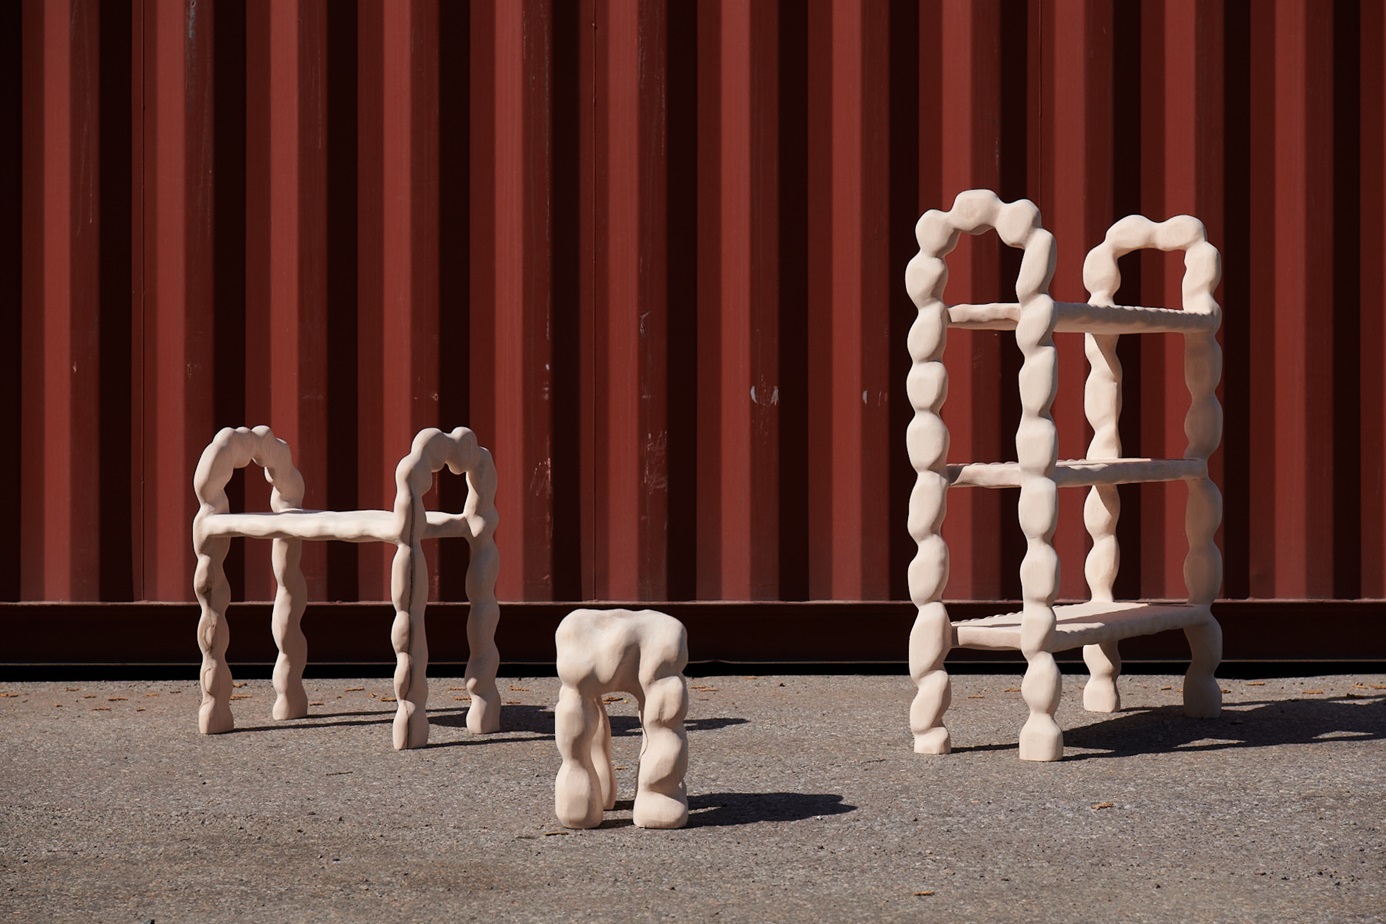 Trio de objetos de mobiliário que combinam suas geometrias de forma livre